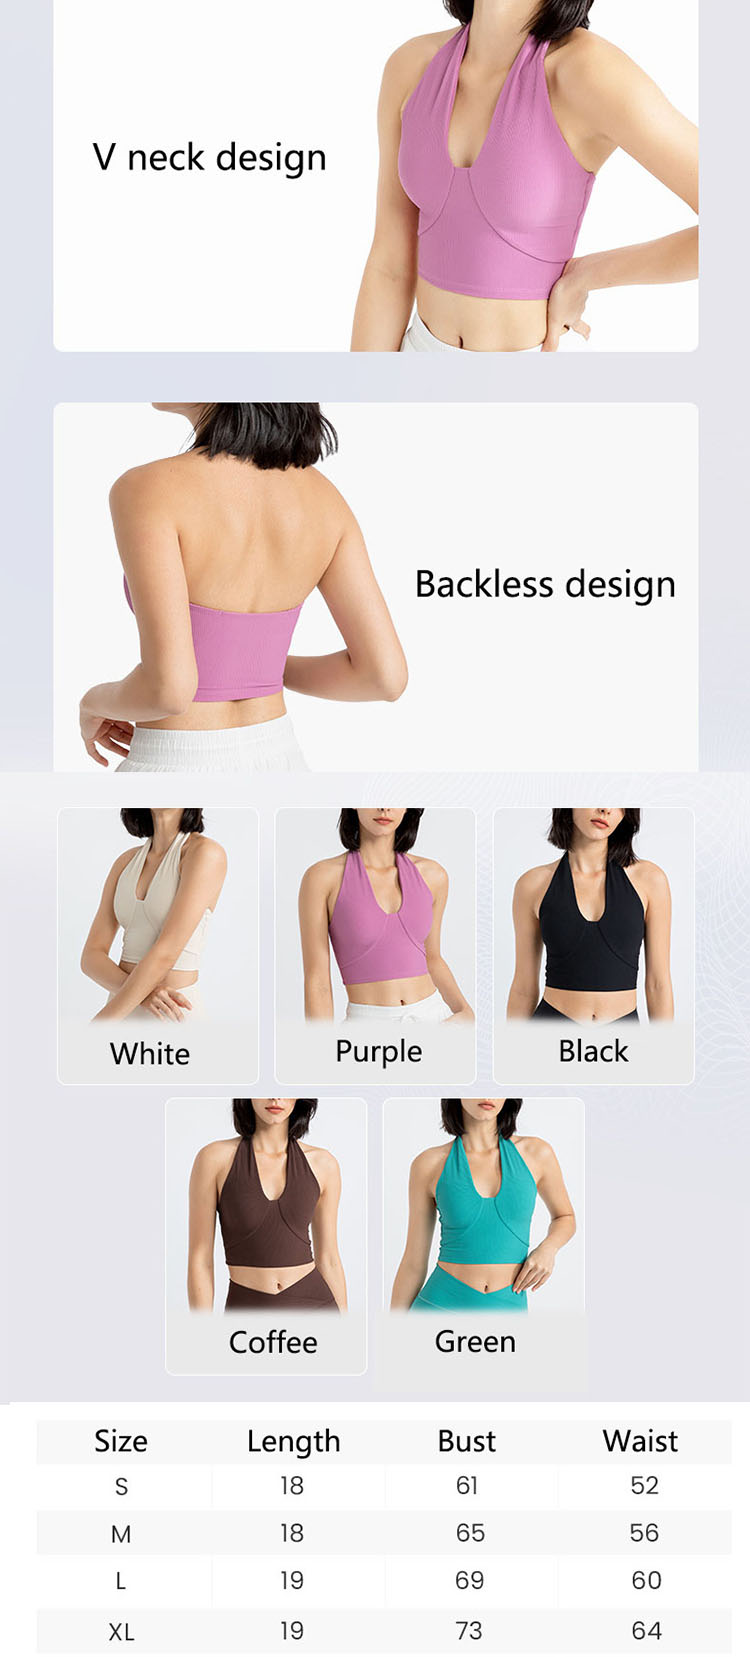 Halter neck sports bra is a common design point of summer underwear